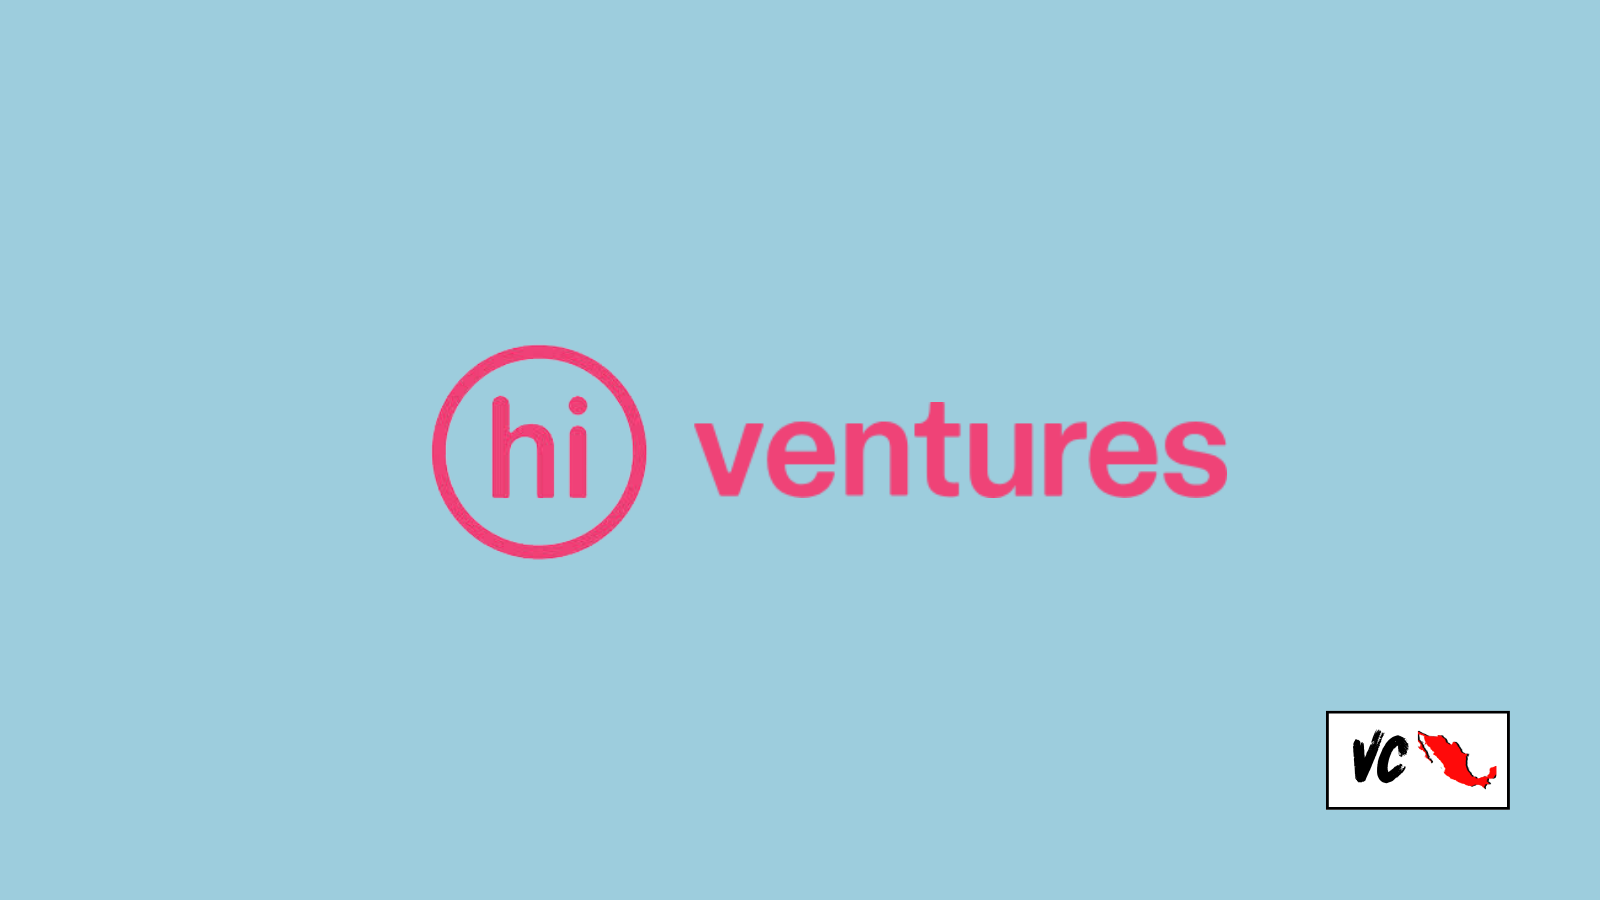 VC Mx: Hi Ventures